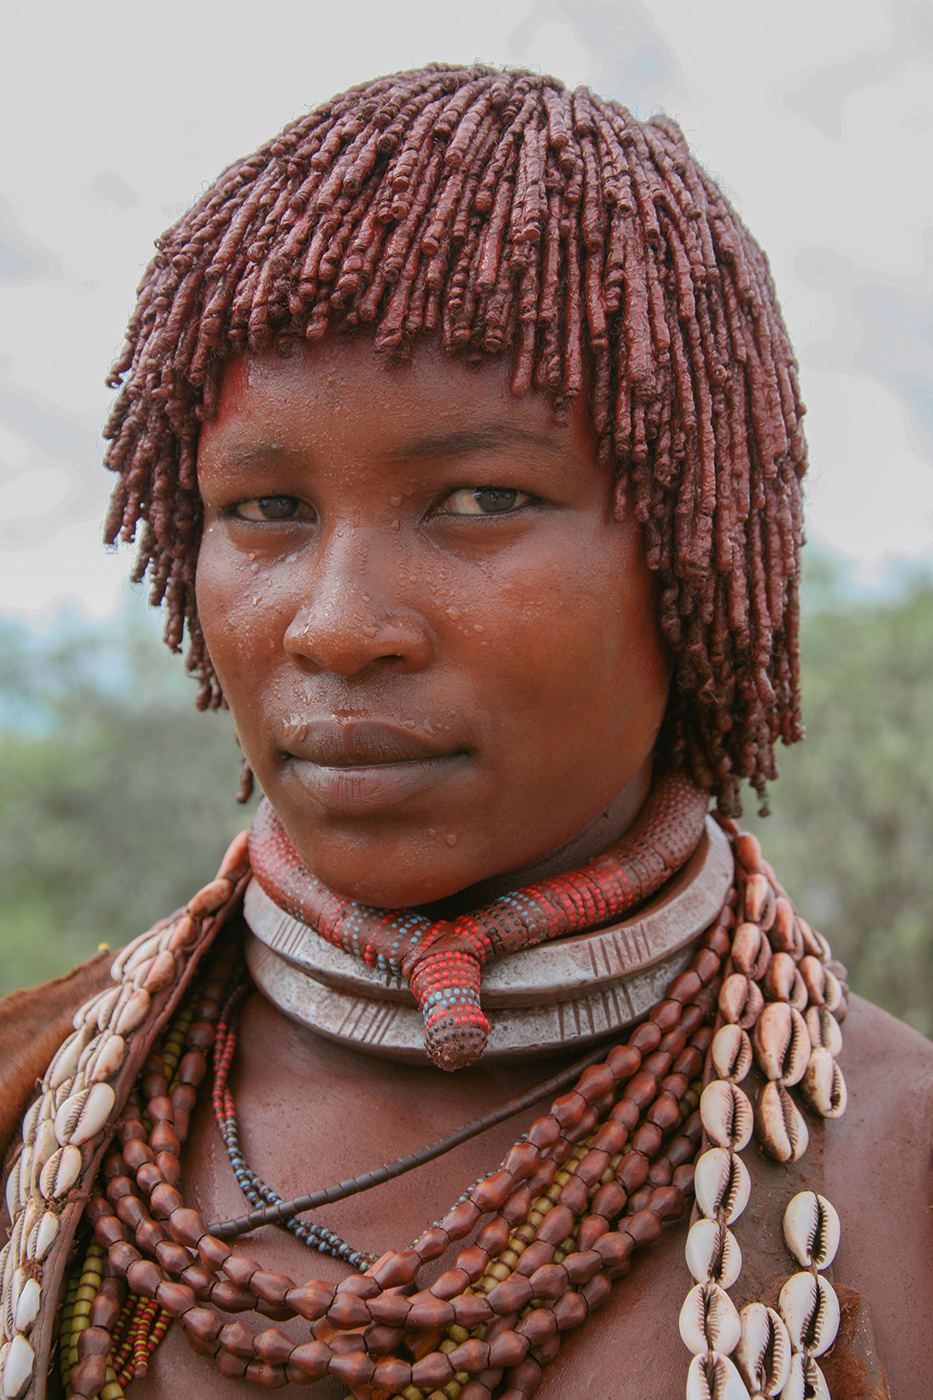 Эфиоп. Племя Хамер Эфиопия. Восточноафриканская (эфиопская) раса. Племя Хамер Эфиопия женщины. Абиссинцы эфиопы.